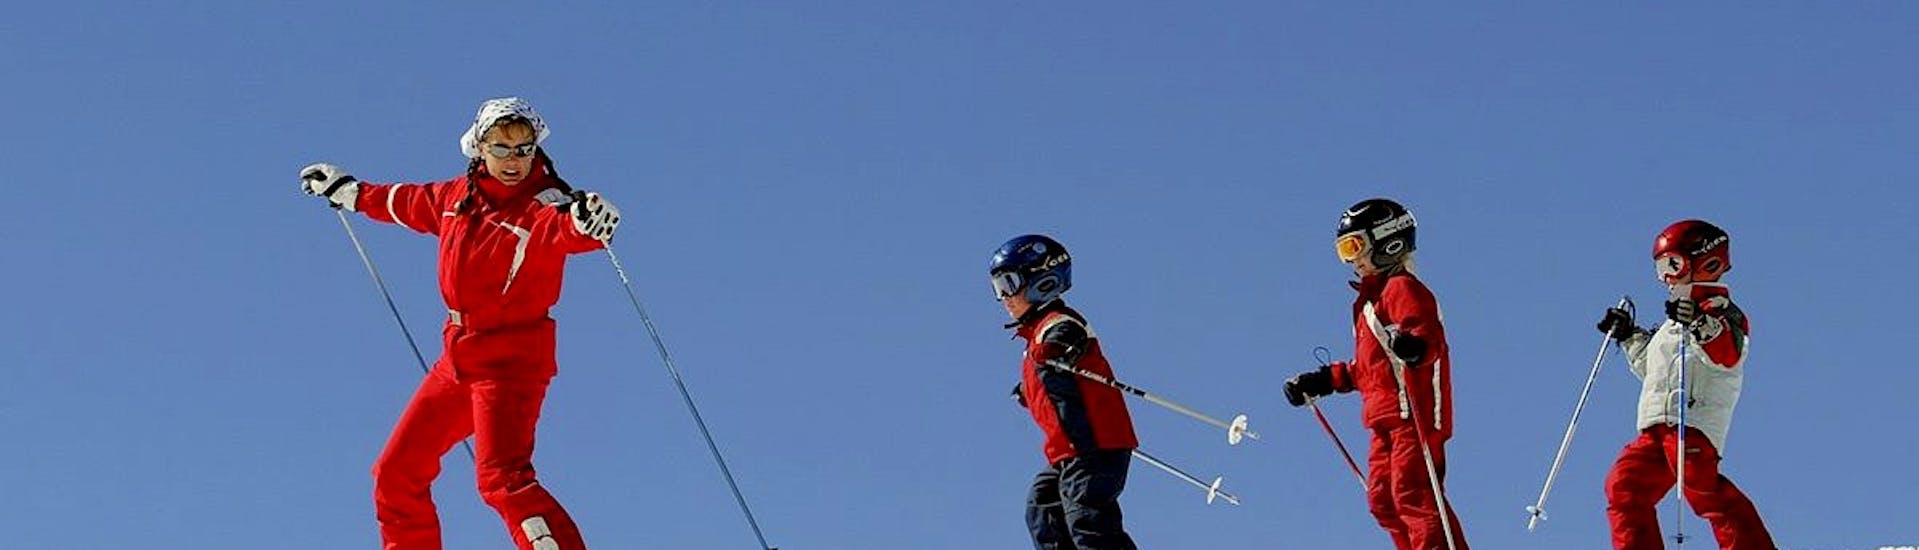 Kinderen en hun skileraar tijdens een privé skiles voor kinderen met de skischool ESF Serre Chevalier - Villeneuve.